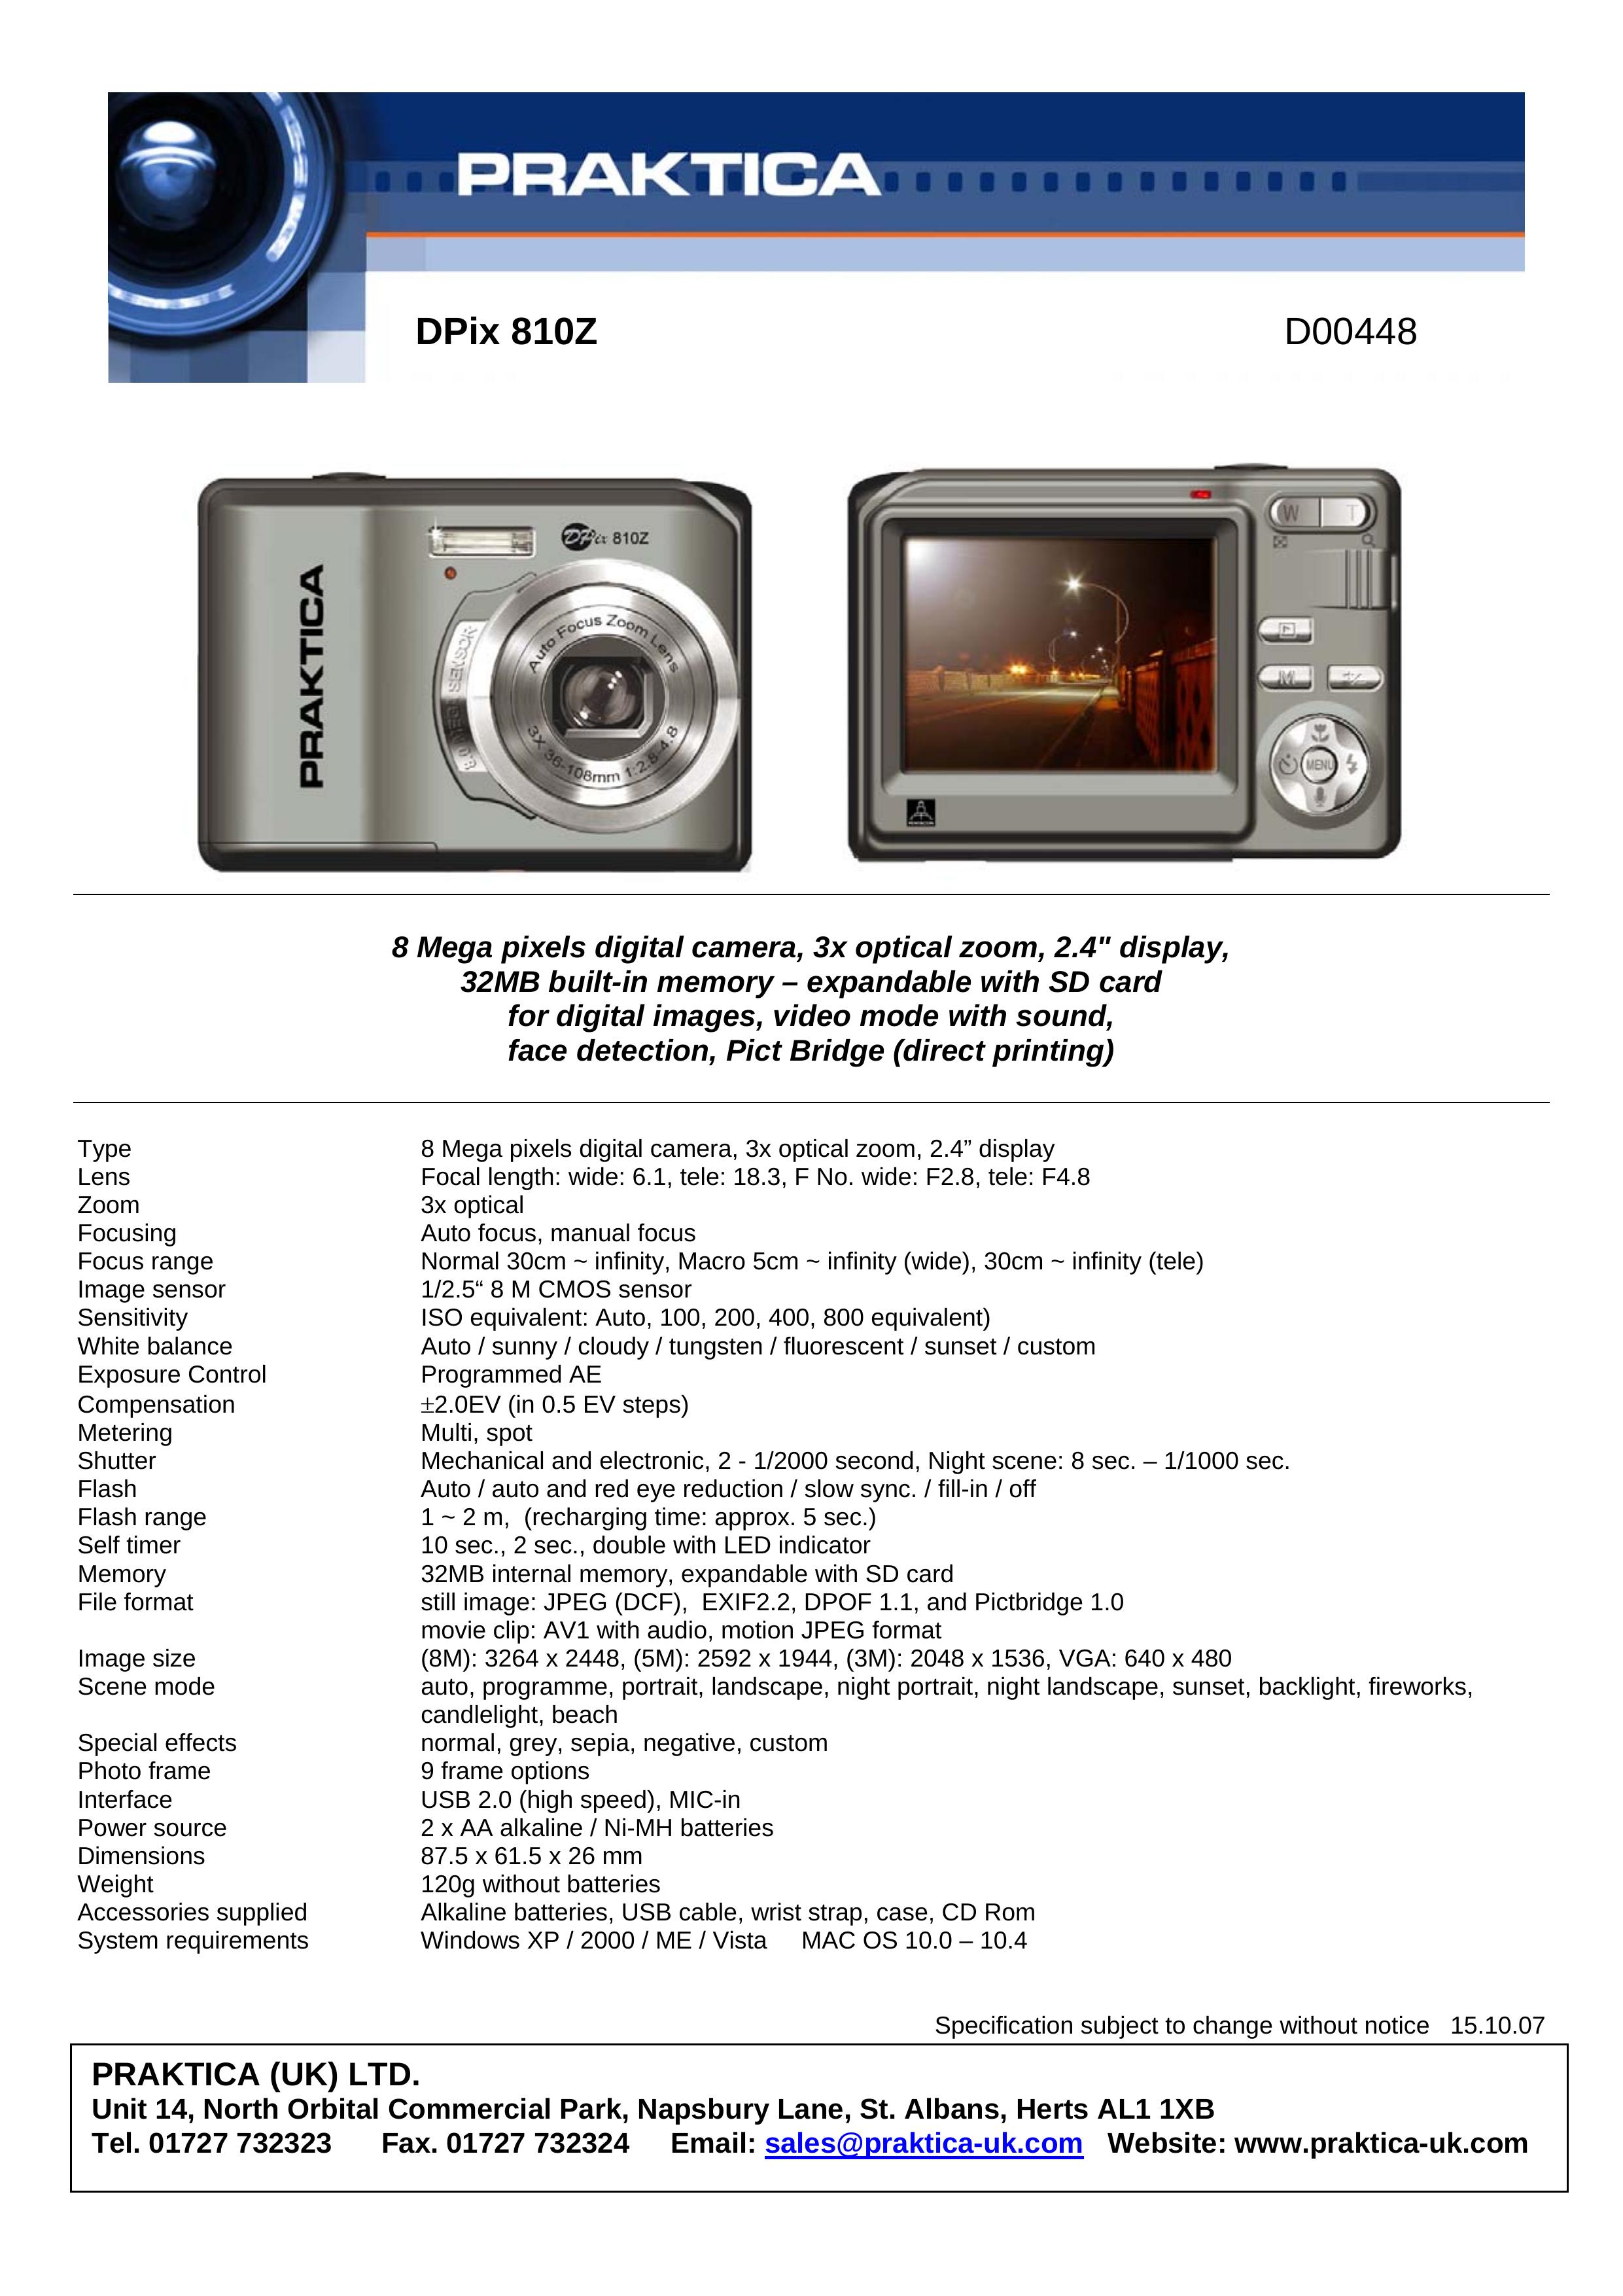 Praktica D00448 Digital Camera User Manual